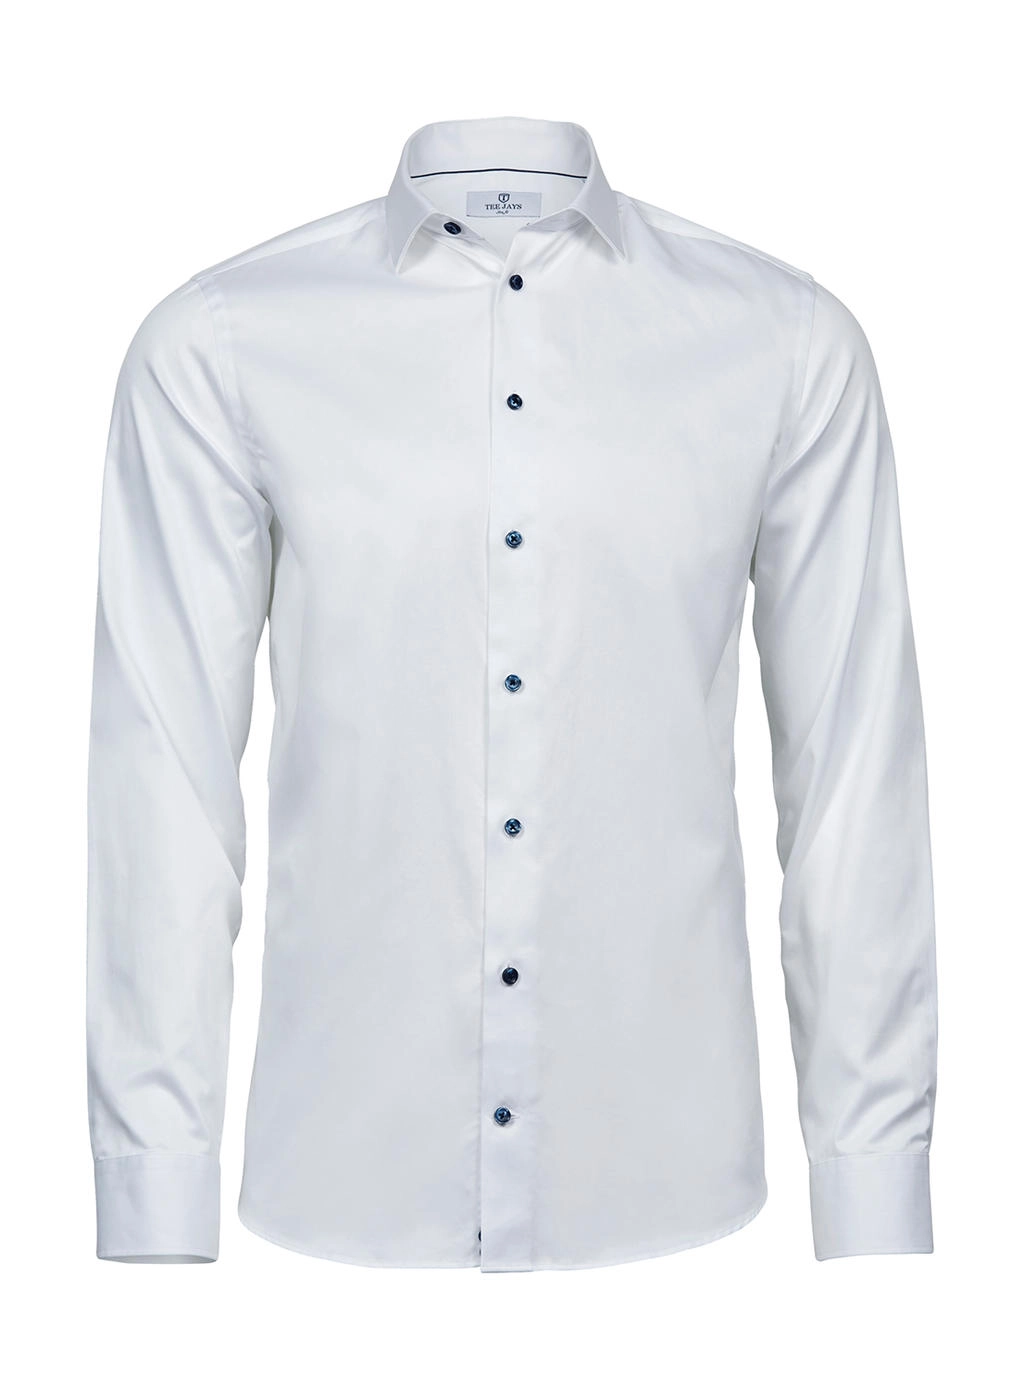 Luxury Shirt Slim Fit zum Besticken und Bedrucken in der Farbe White/Blue mit Ihren Logo, Schriftzug oder Motiv.